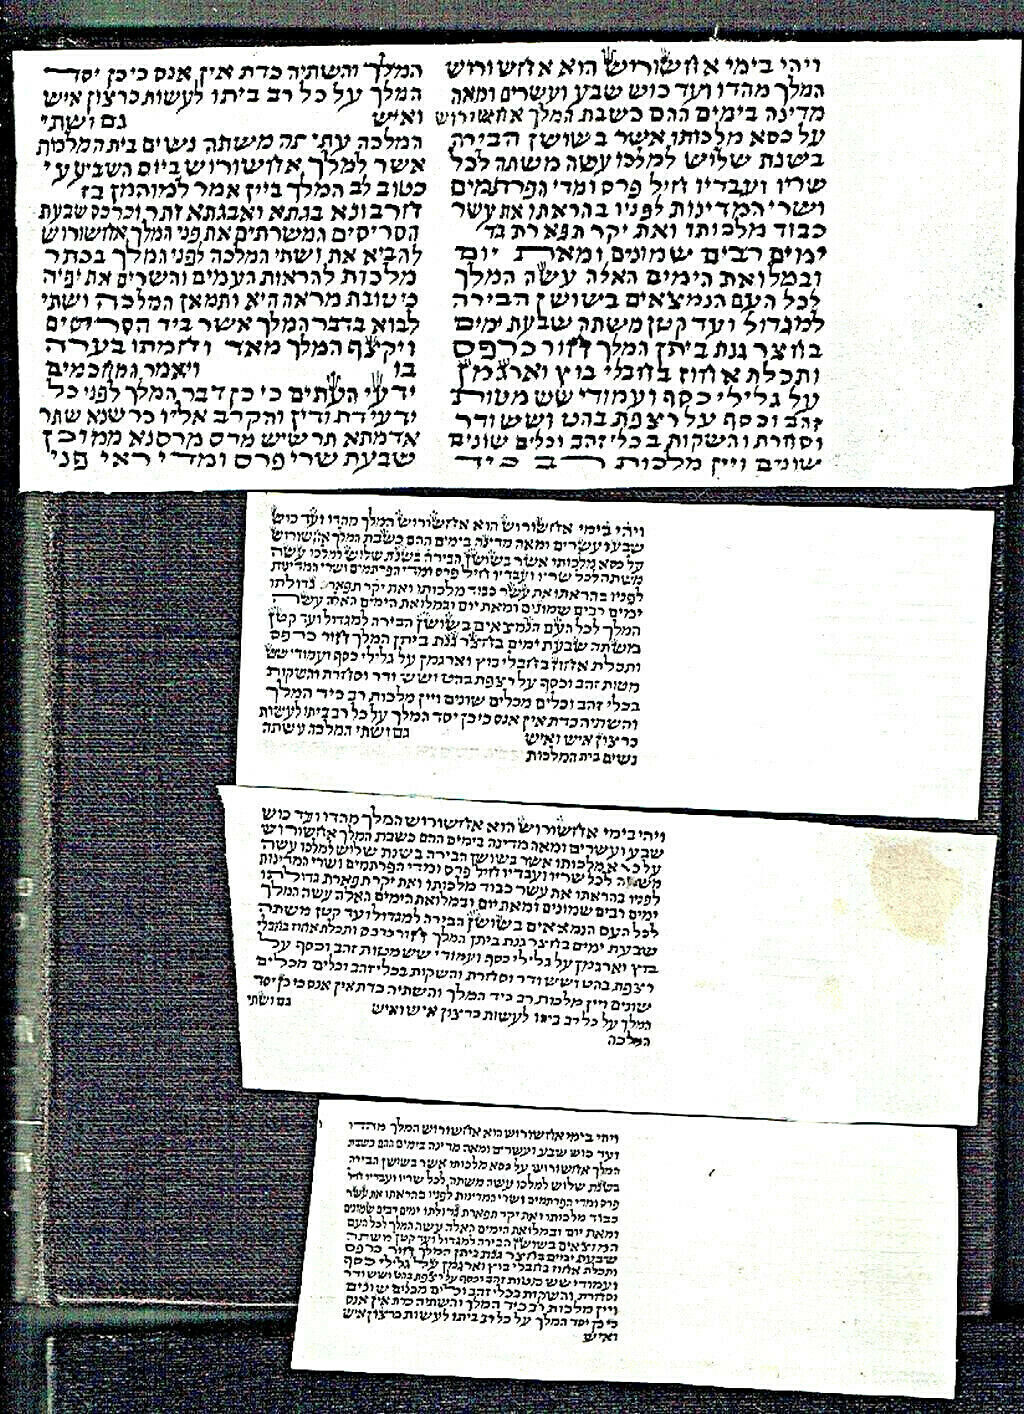 Judaica 4 Antique Manuscript Fragments of Megillat Esther on parchment